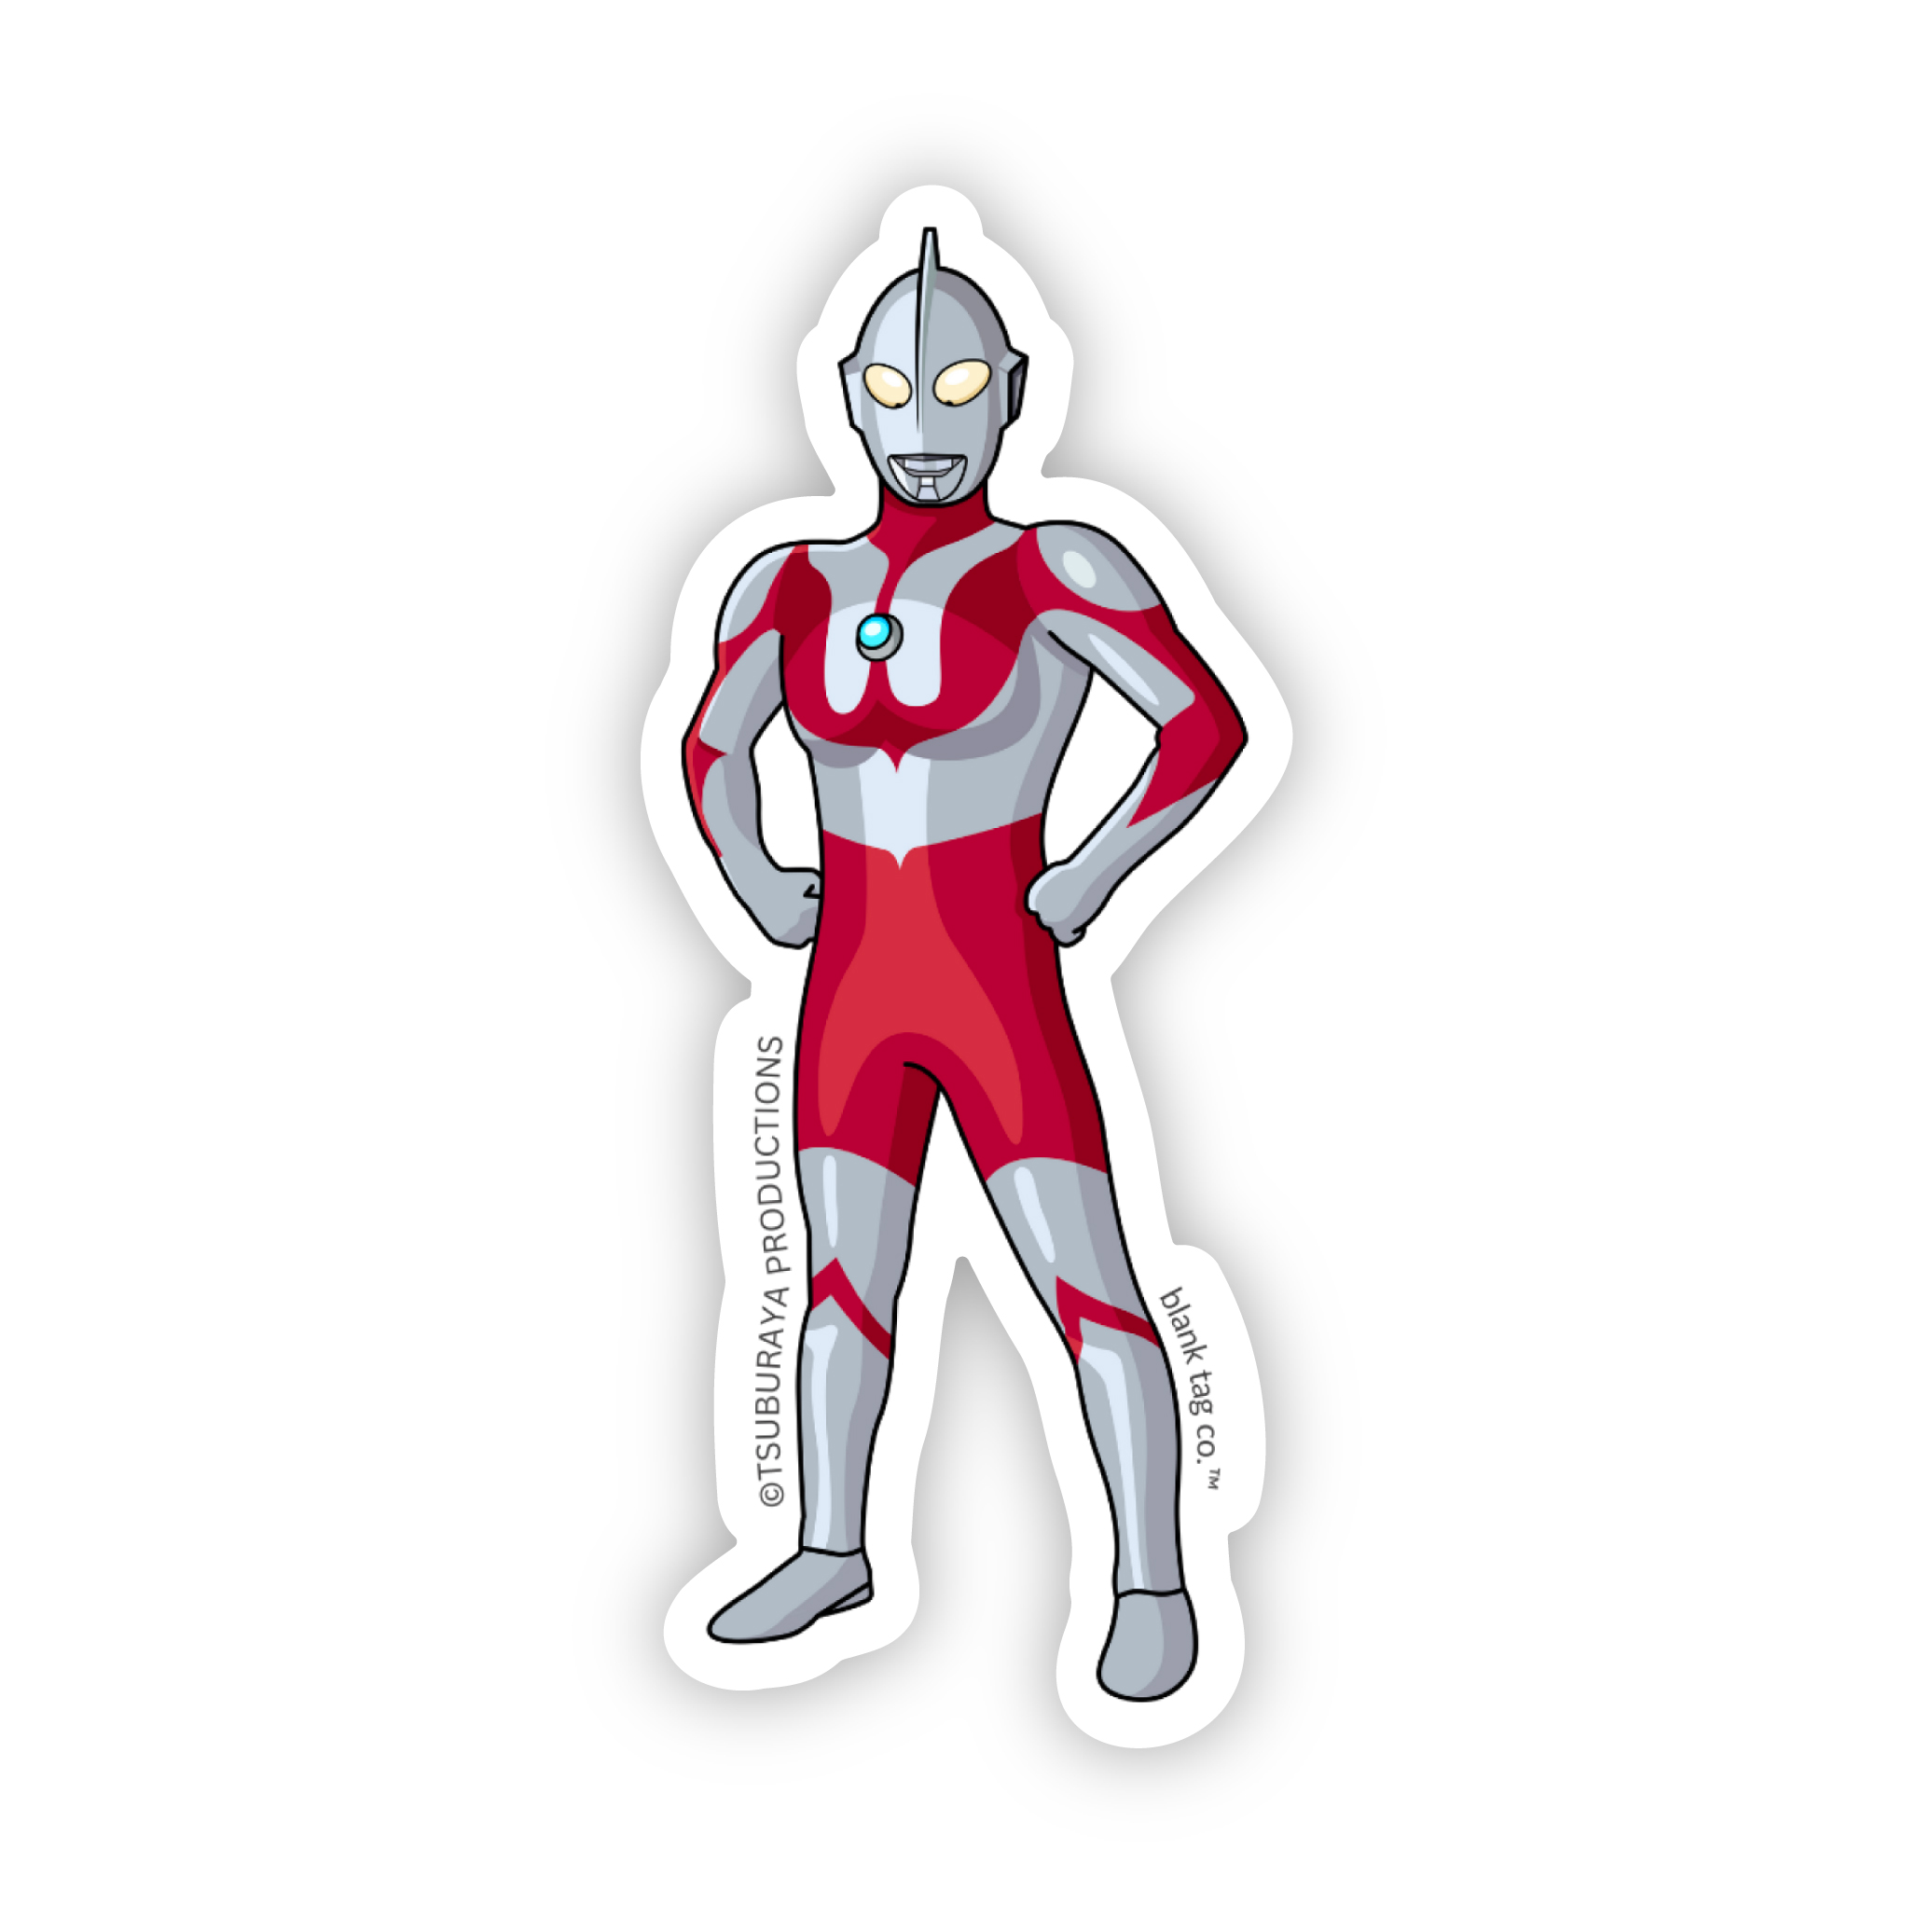 The Ultraman Sticker